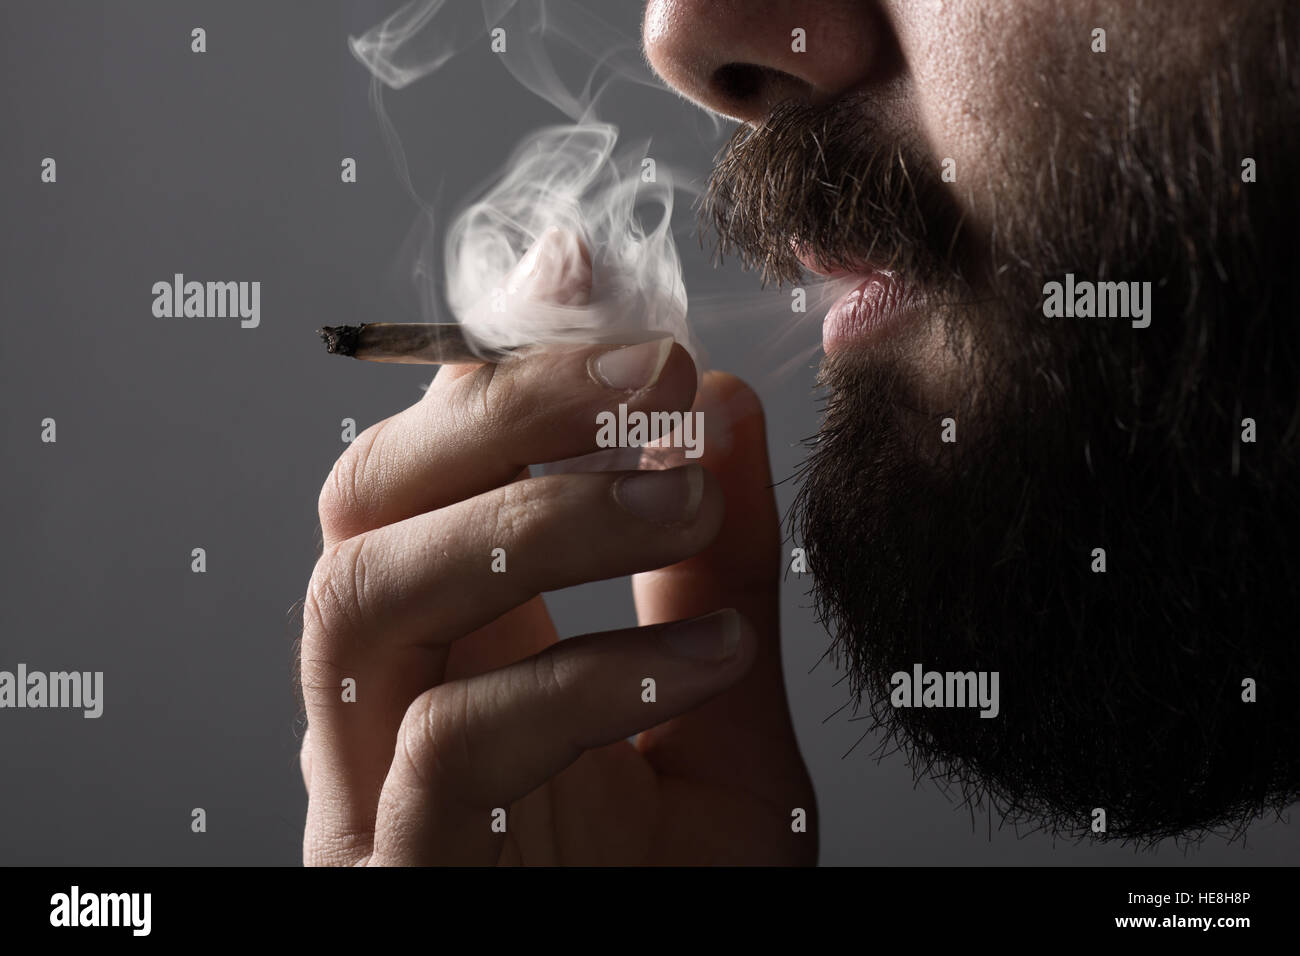 Détail d'un homme avec une barbe de fumer une cigarette Banque D'Images